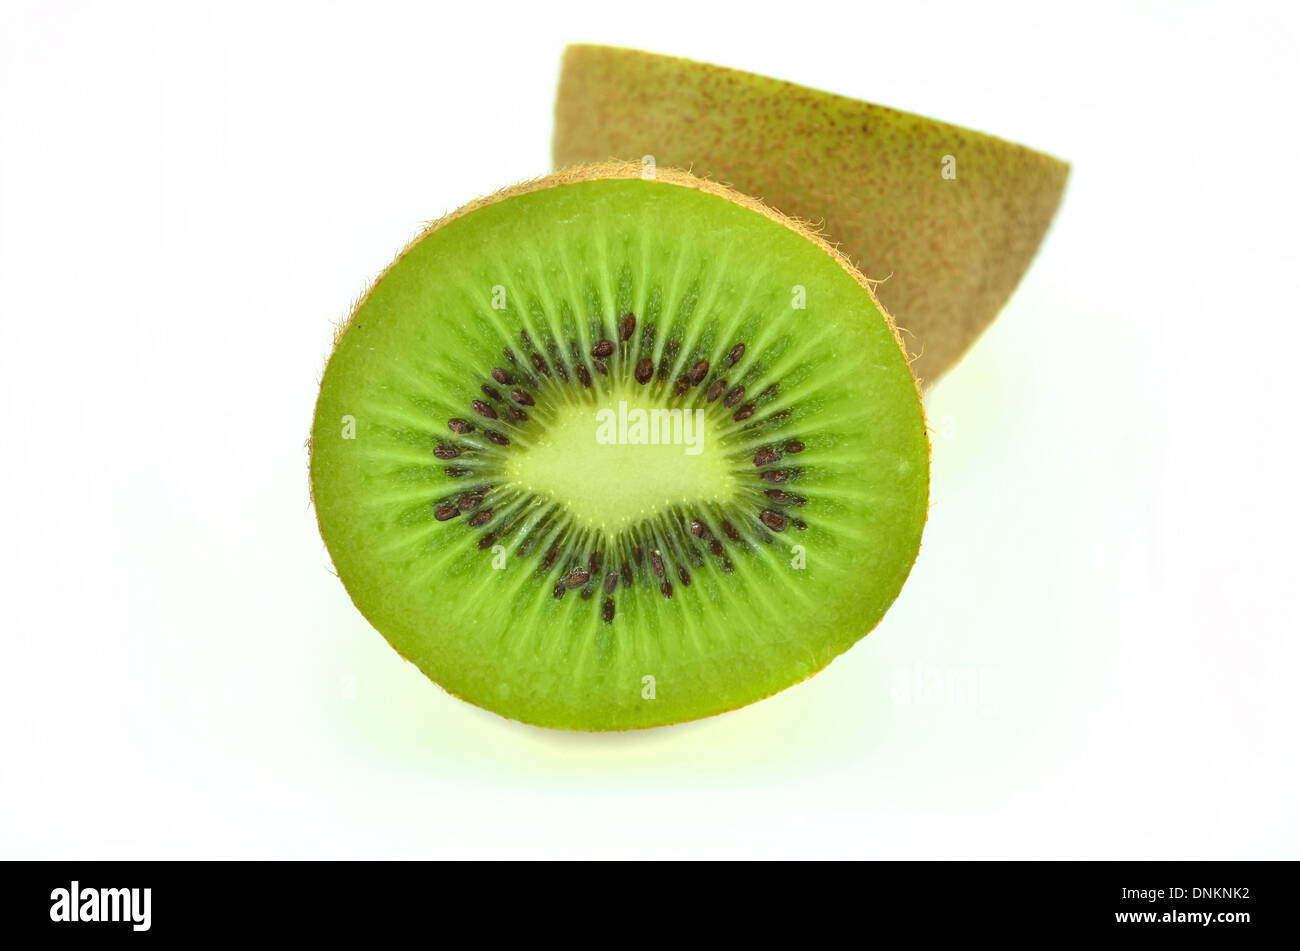 Whole kiwi fruit and his sliced segments isolated on white background Stock Photo